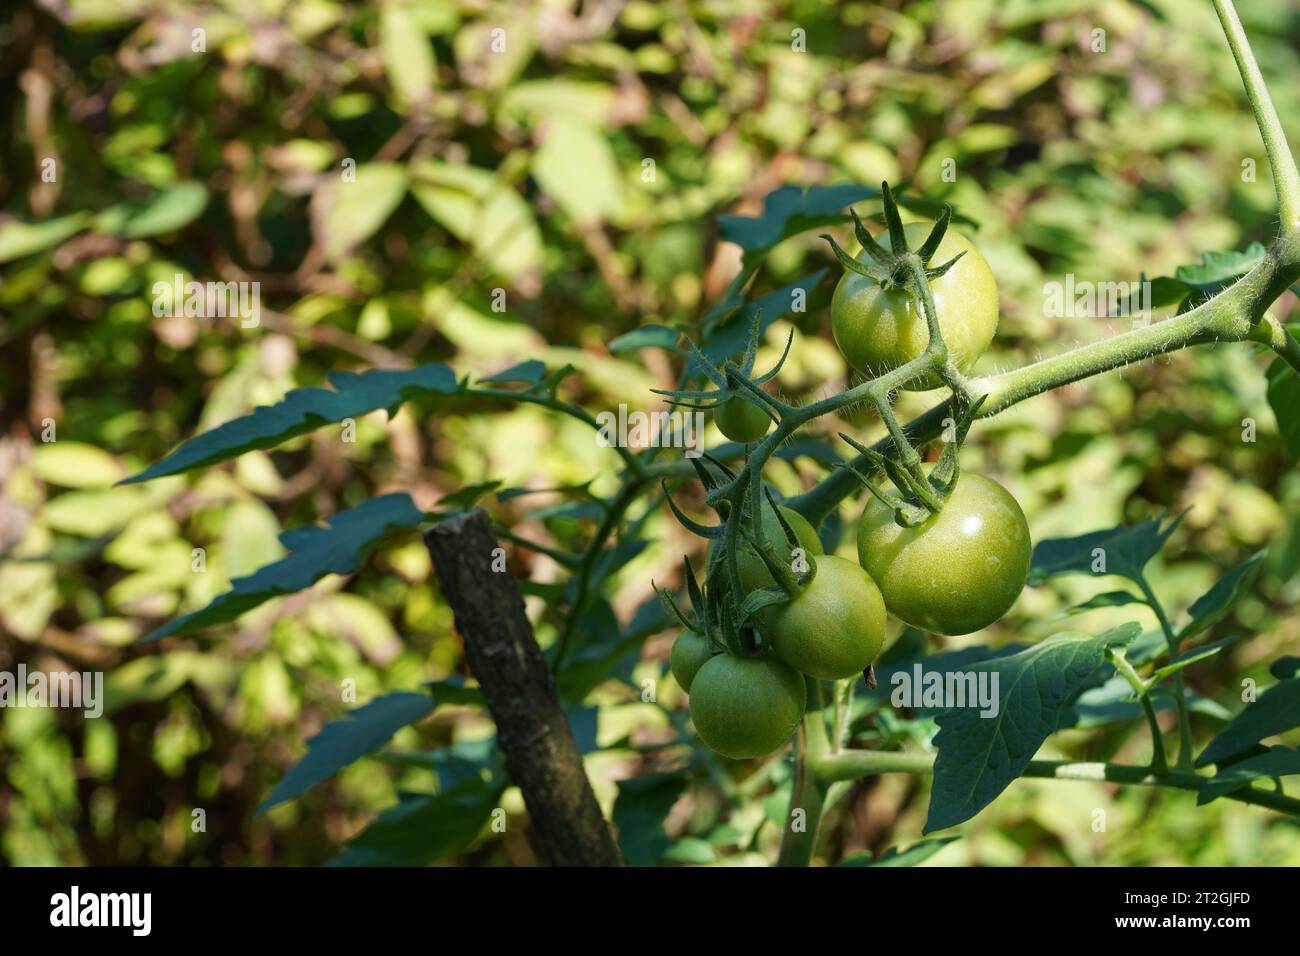 Unreife Tomatenfrüchte von grüner Farbe wachsen auf der Tomatenpflanze. Geeignet als Hintergrund für Gemüse-, Landwirtschafts- oder Gartenthemen. Stockfoto